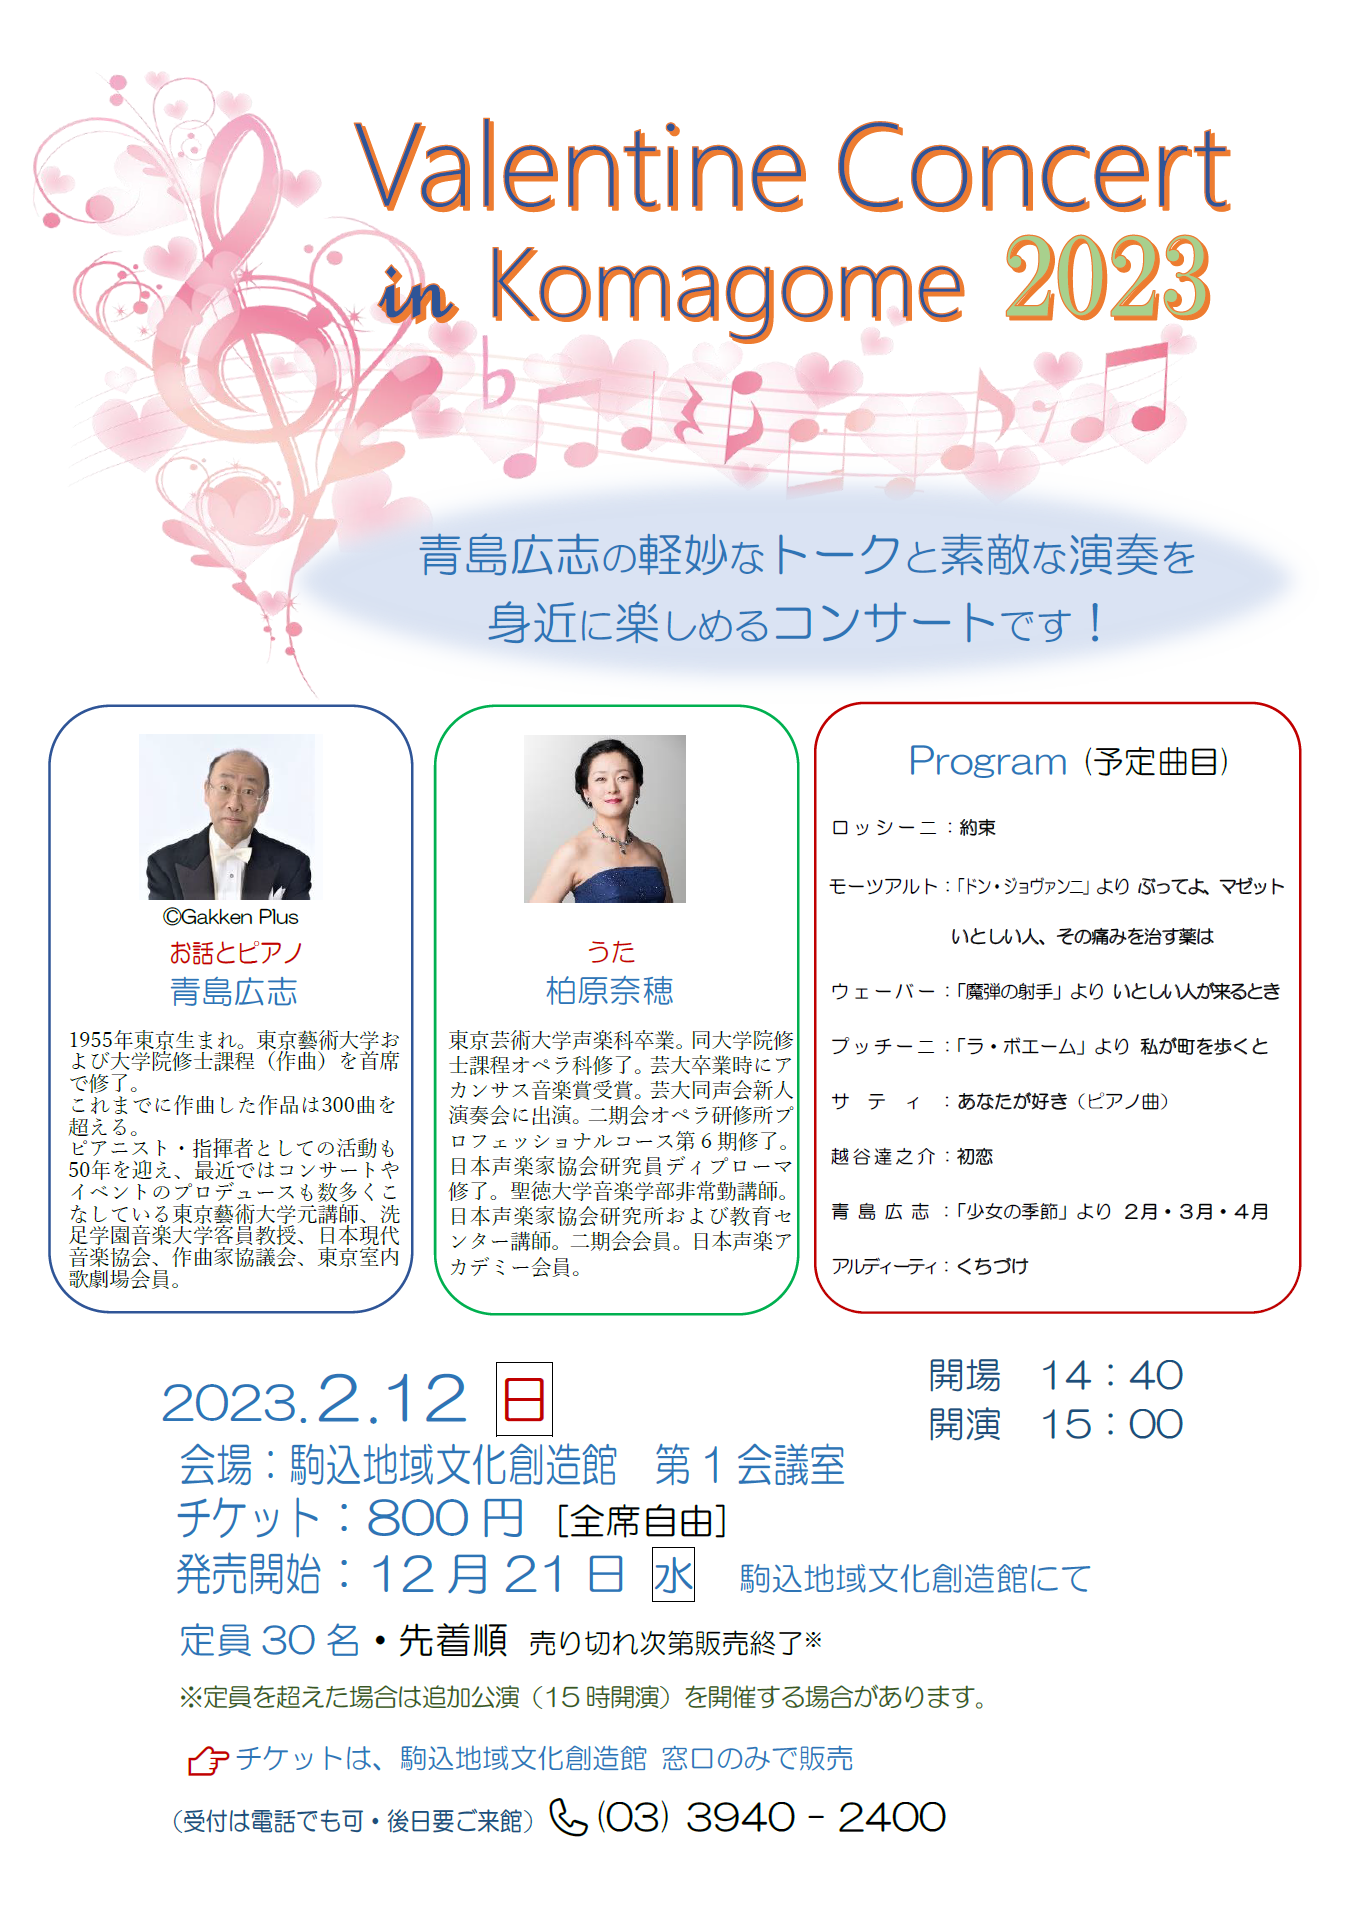 Valentine Concert in Komagome 2023